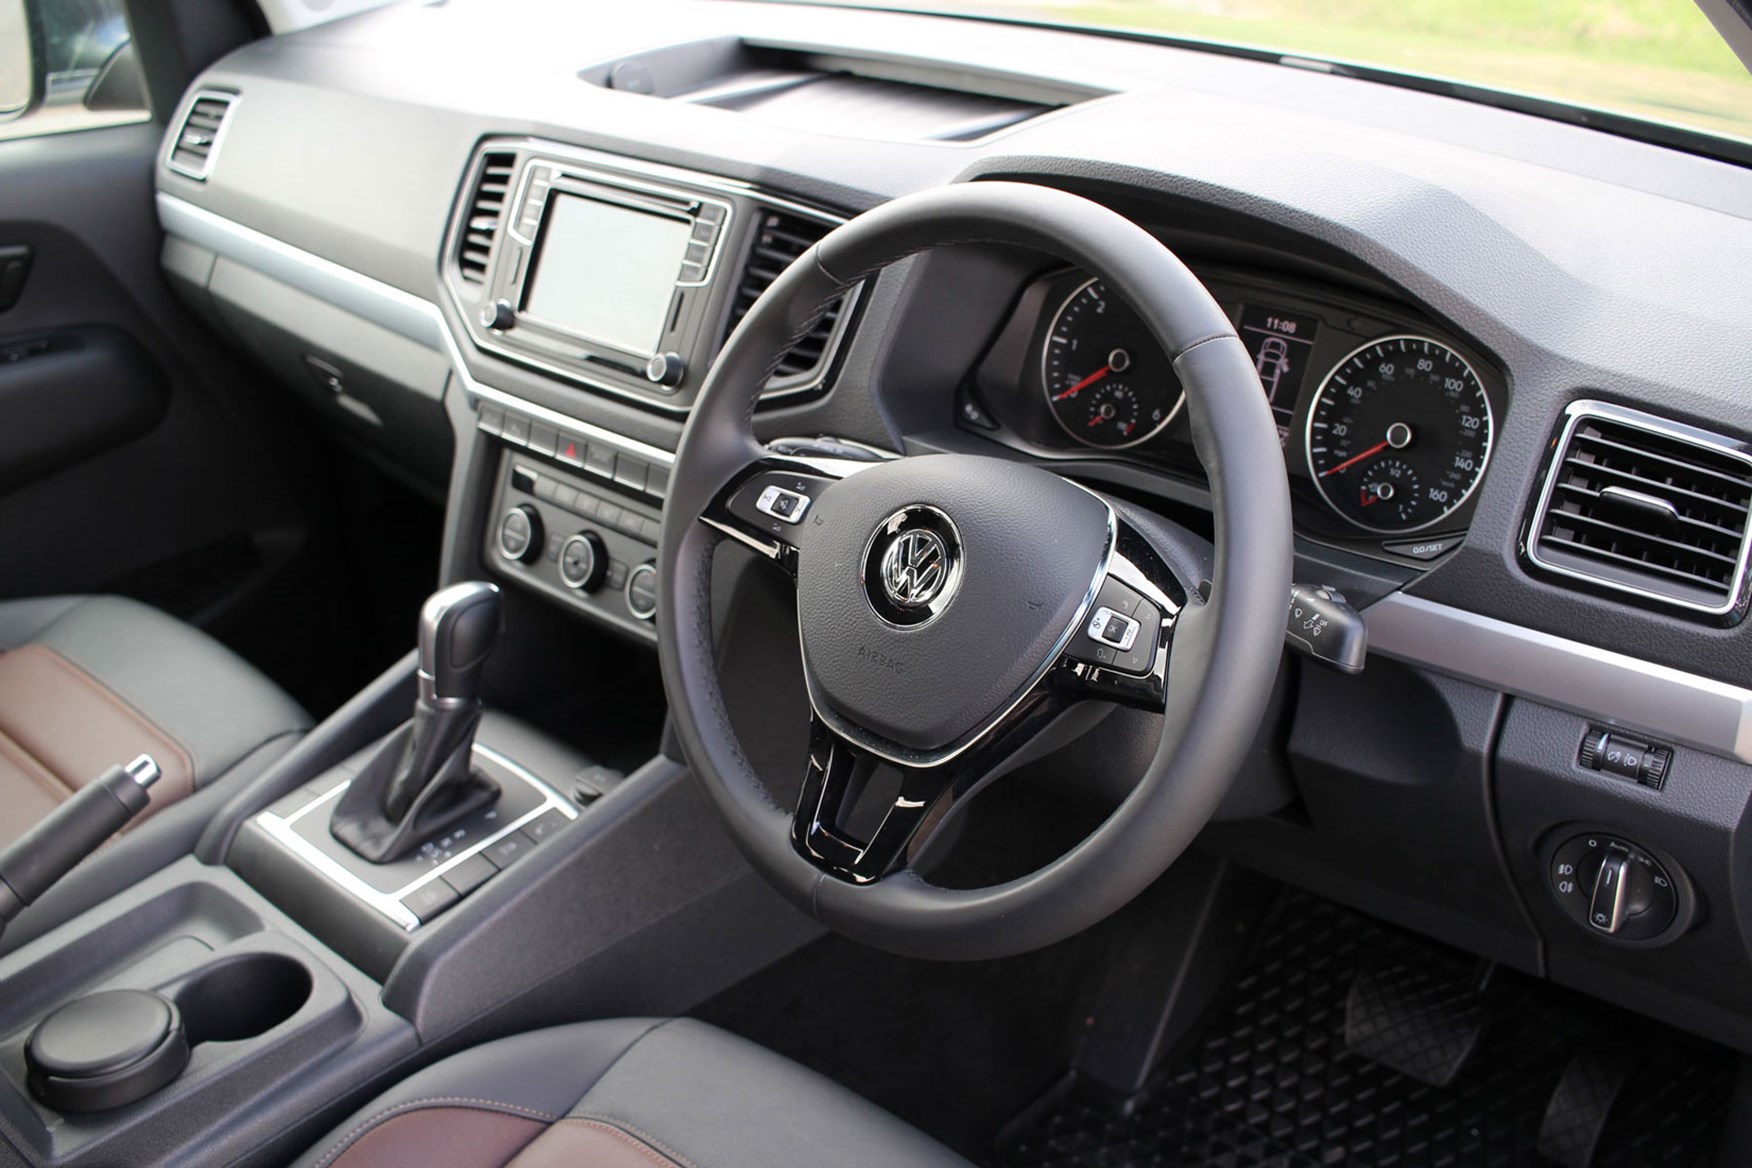 VW Amarok V6 Highline 224hp review - cab interior